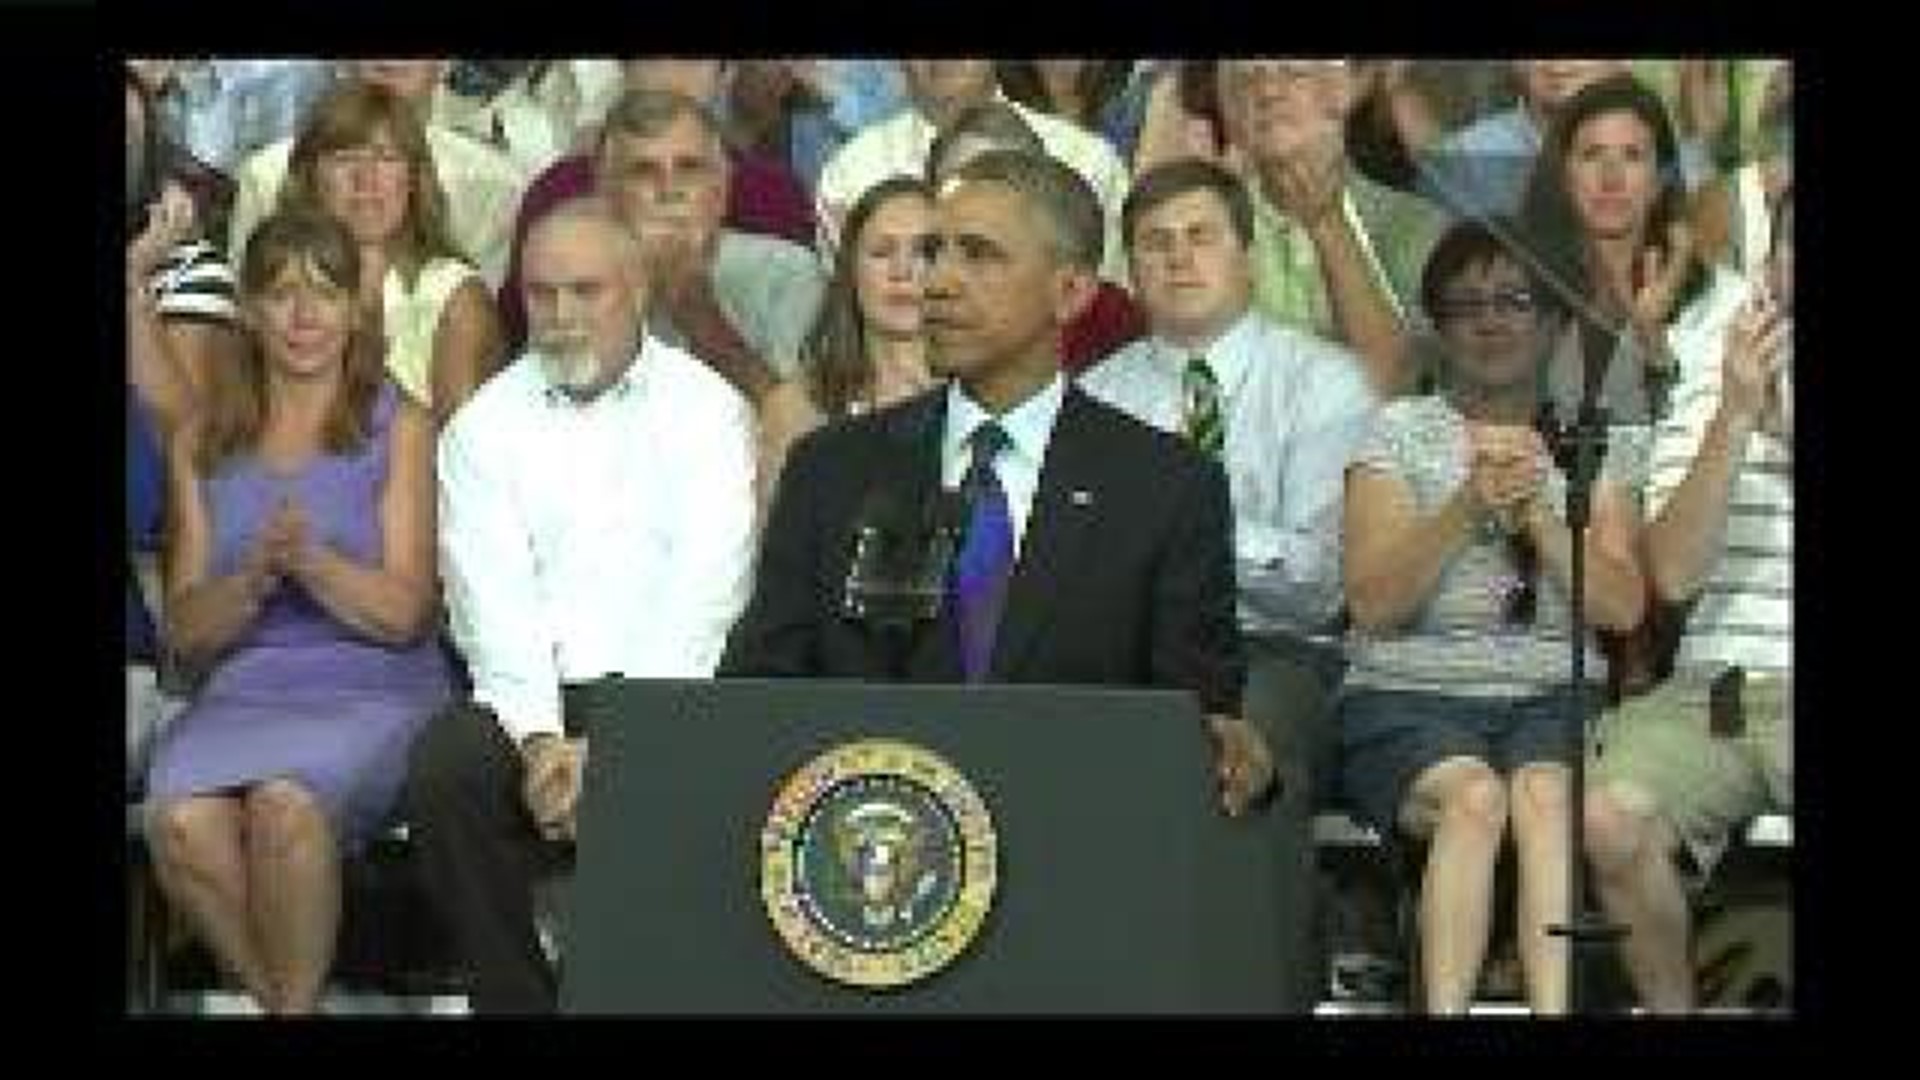 President Obama speaks in Galesburg - clip 6 of 7